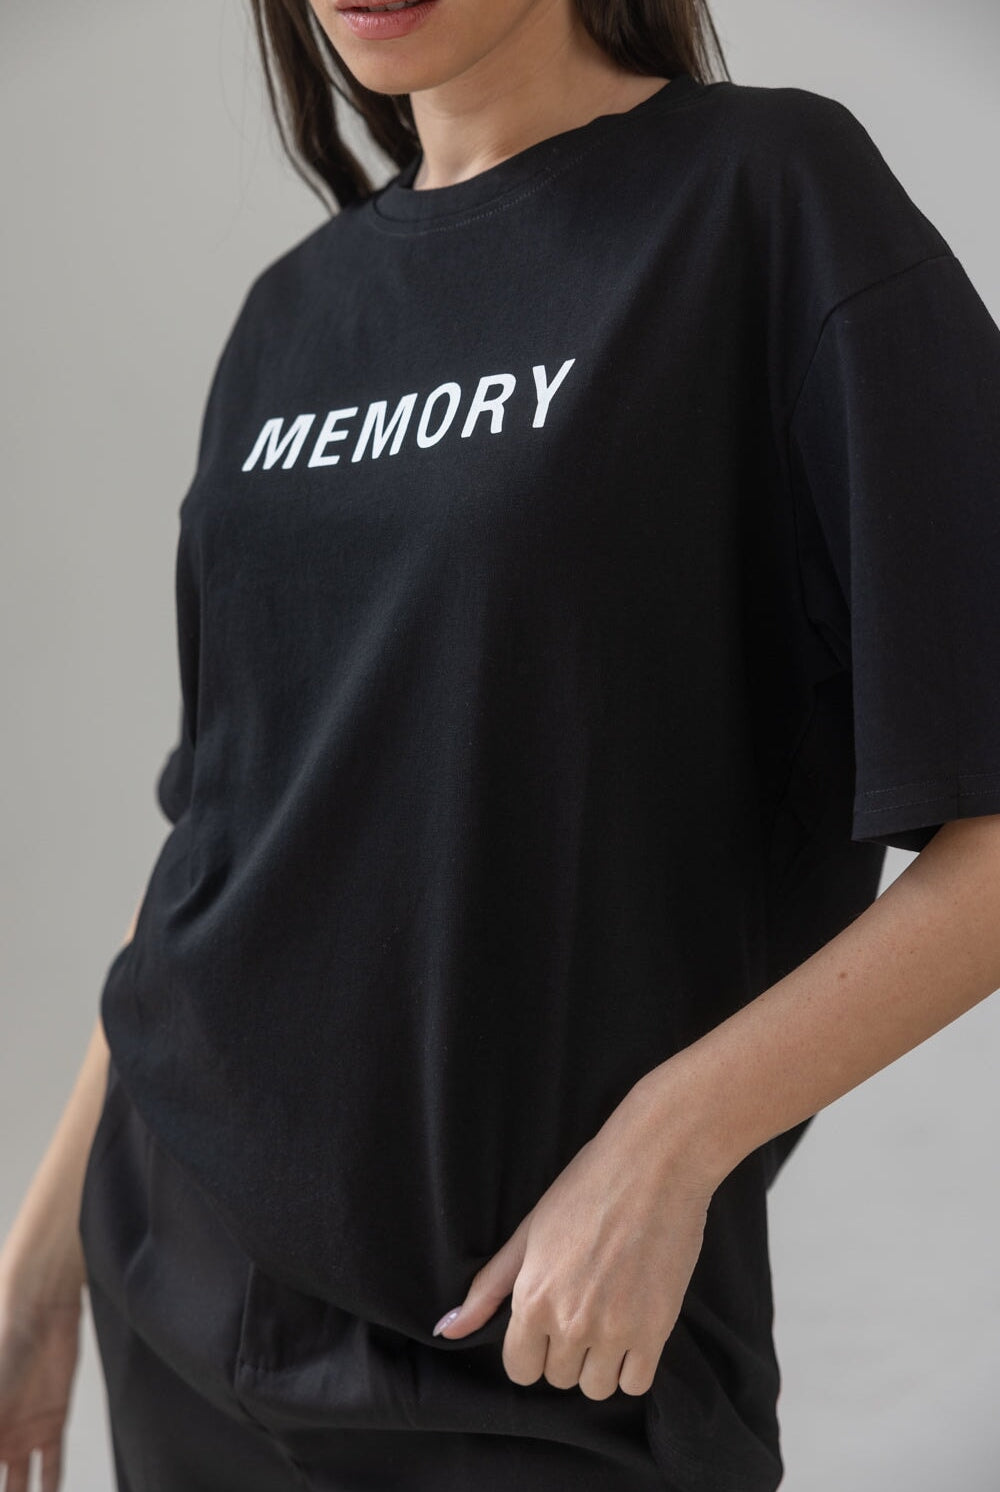 חולצת מיימורי TwentySix 